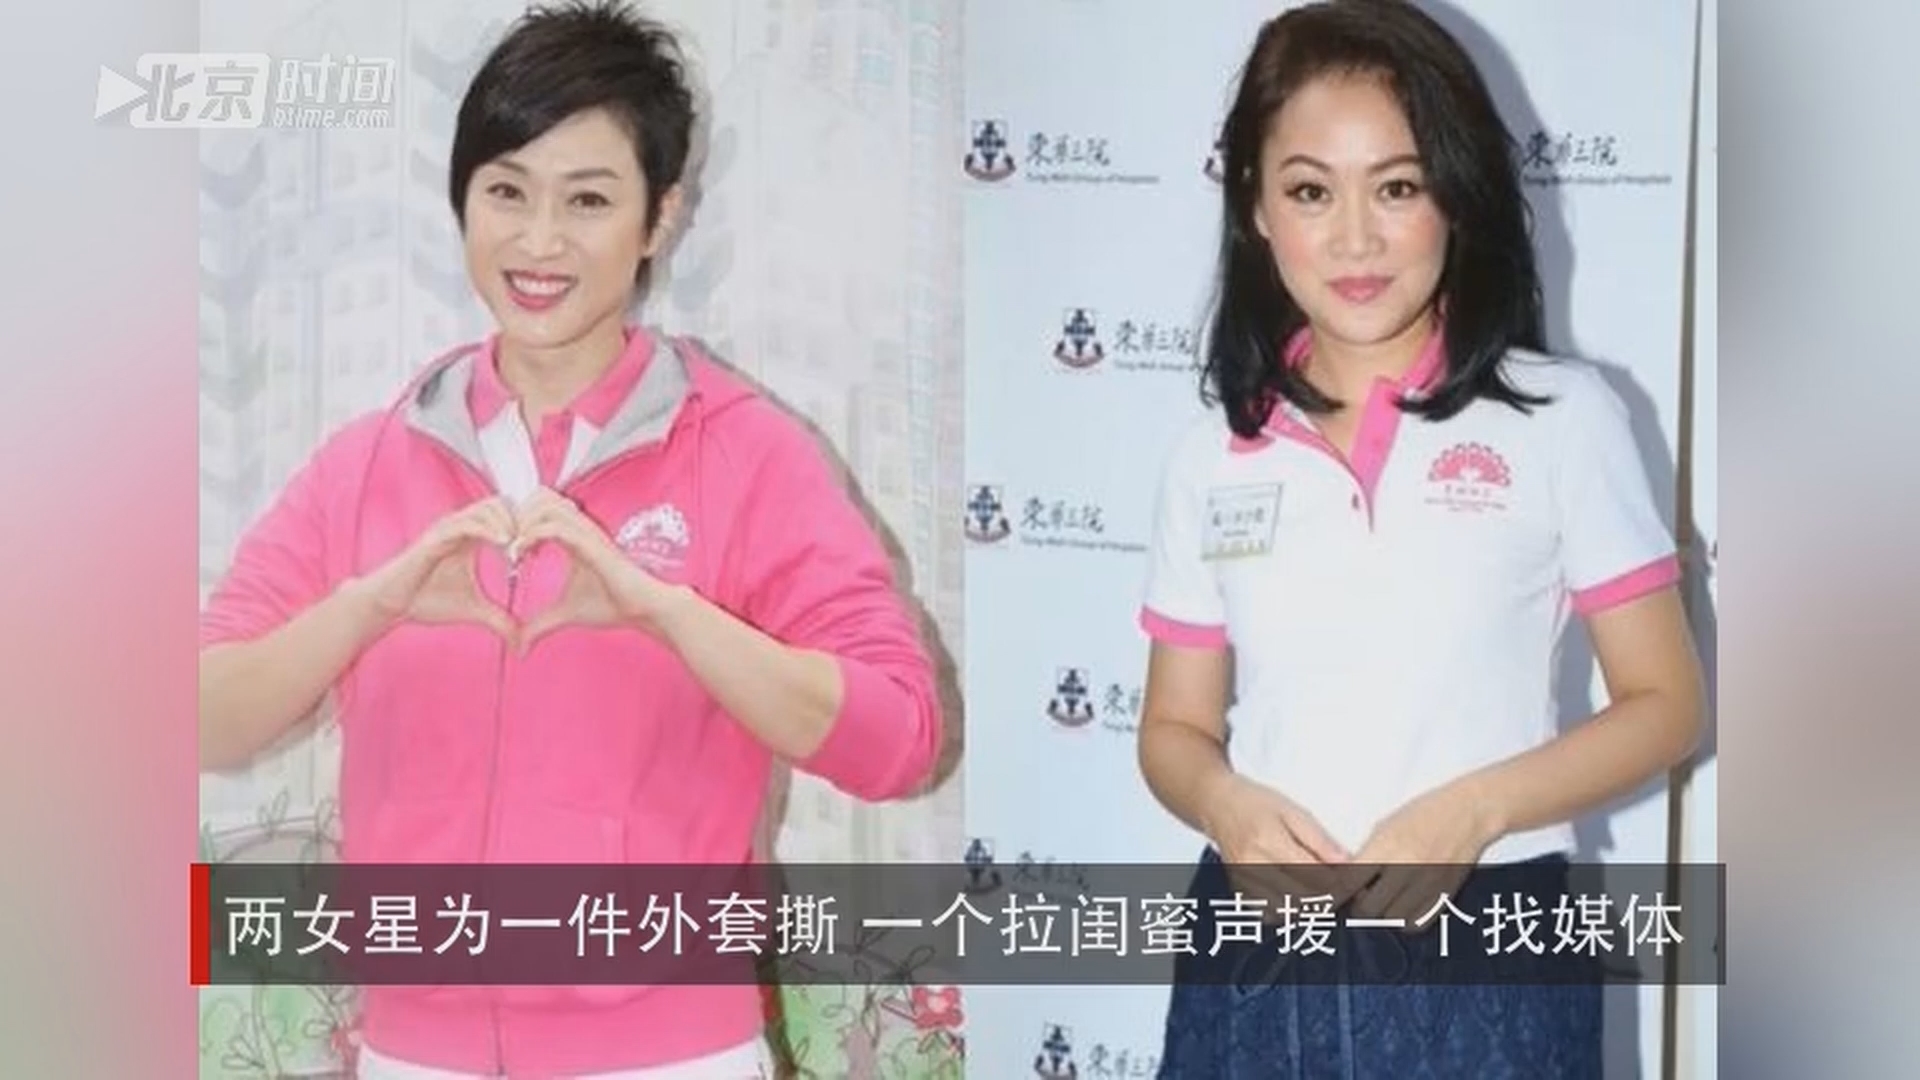 11月28日消息,据香港媒体报道,两位前港姐梁小冰和陈法蓉日前出席